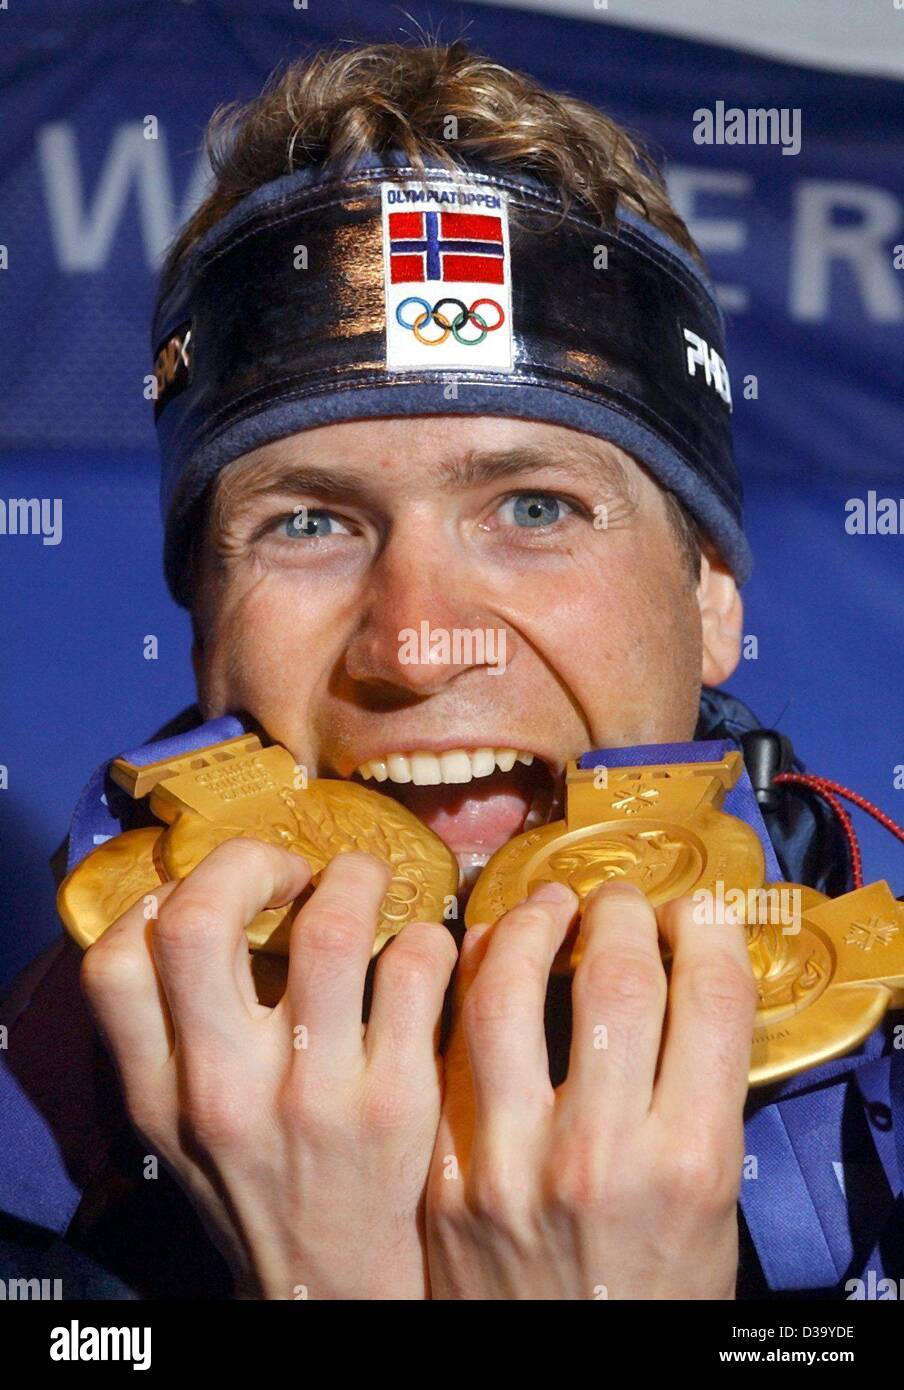 (Dpa) - XIX Olympische Winterspiele: Norweger Ole Einar Björndalen demonstriert, wie sehr er seine vier Goldmedaillen bei der Siegerehrung am 20.2.2002 auf der Medal Plaza in Salt Lake City.With diese 4 Medaillen liebt der 28-j hrige Biathletin ist nun der erfolgreichste Silbermedaillengewinner der Olympischen Spiele Stockfoto